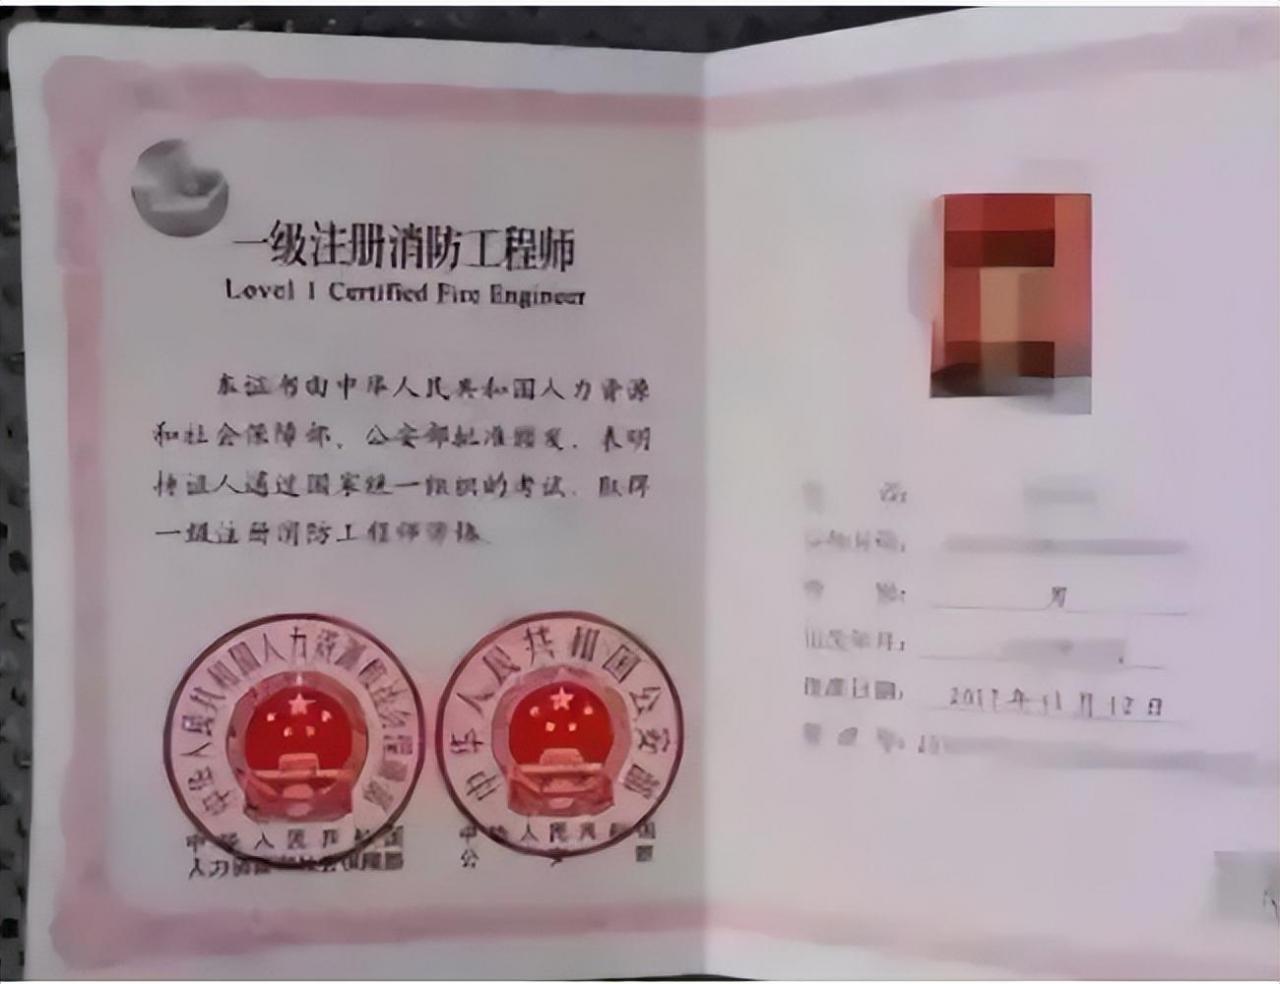 中国十大含金量证书排名,现在比较实用的证书有哪些